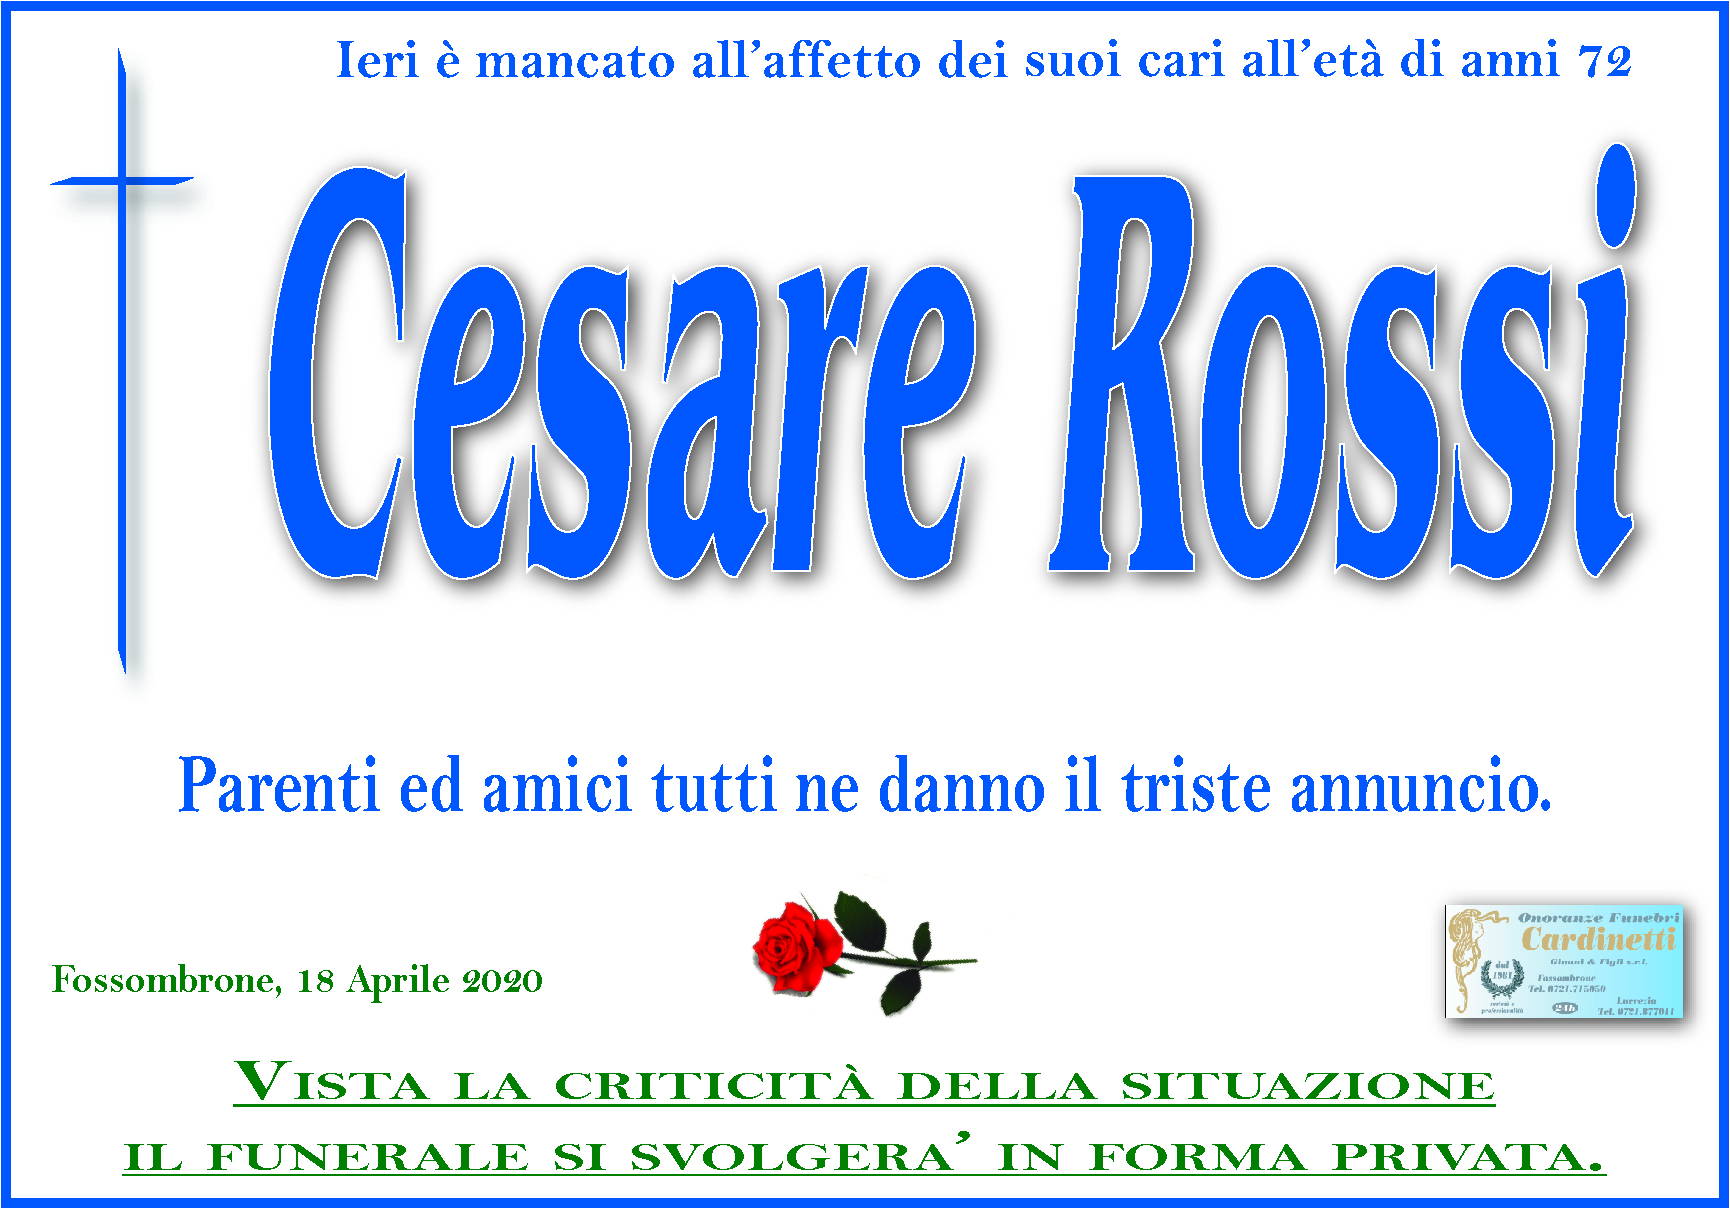 Cesare Rossi